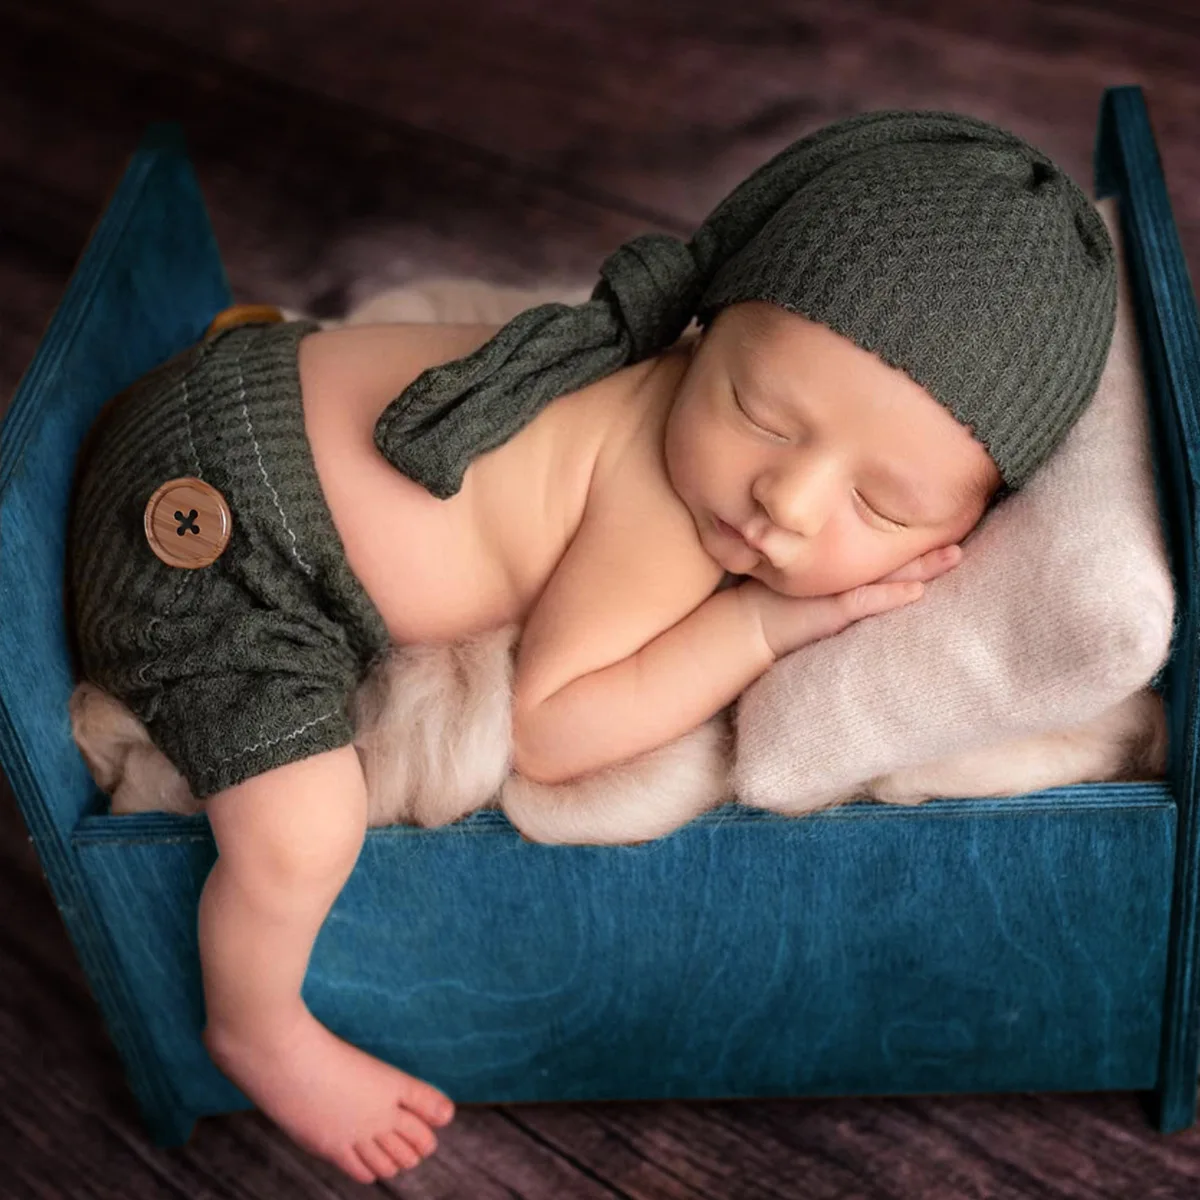 Neonato fotografia puntelli bambino ragazzo ragazza vestito pagliaccetto cappello tuta neonati foto riprese fotografia abbigliamento